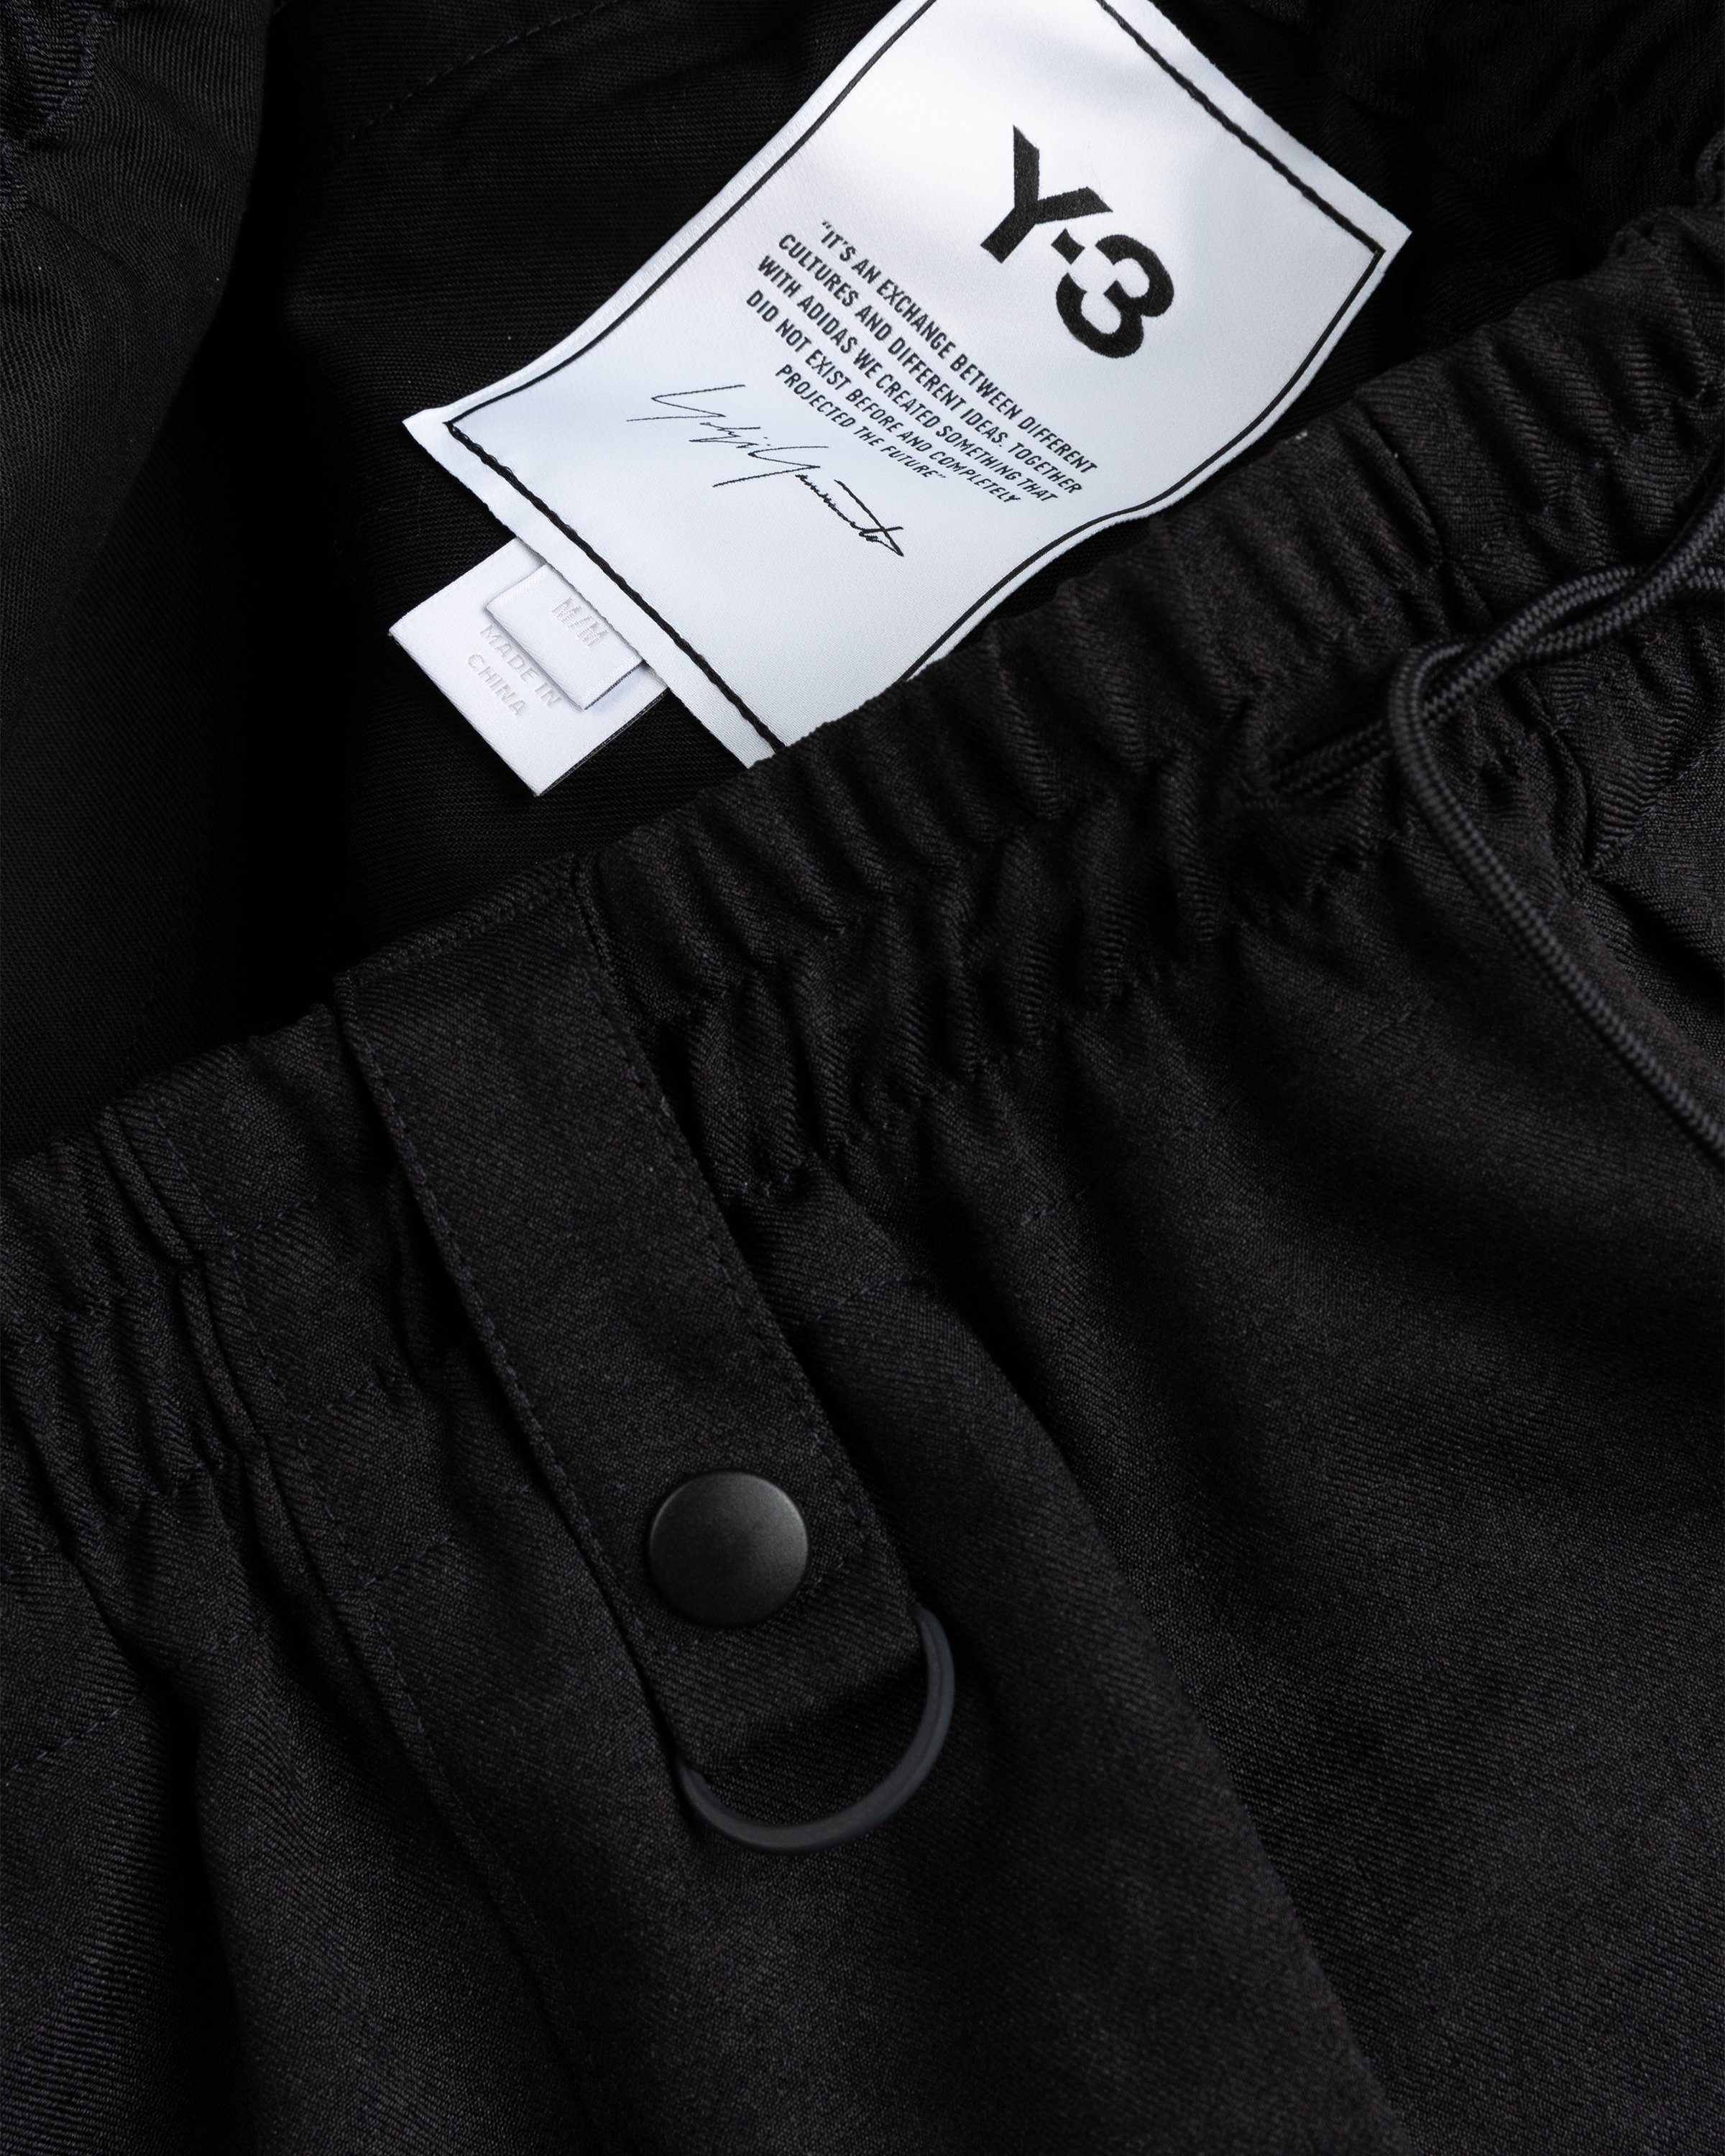 Y-3 - CL S UNI Pants - Clothing - Black - Image 4